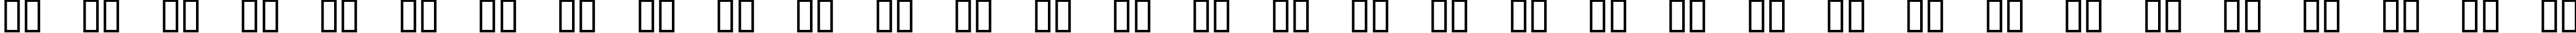 Пример написания русского алфавита шрифтом STUCK